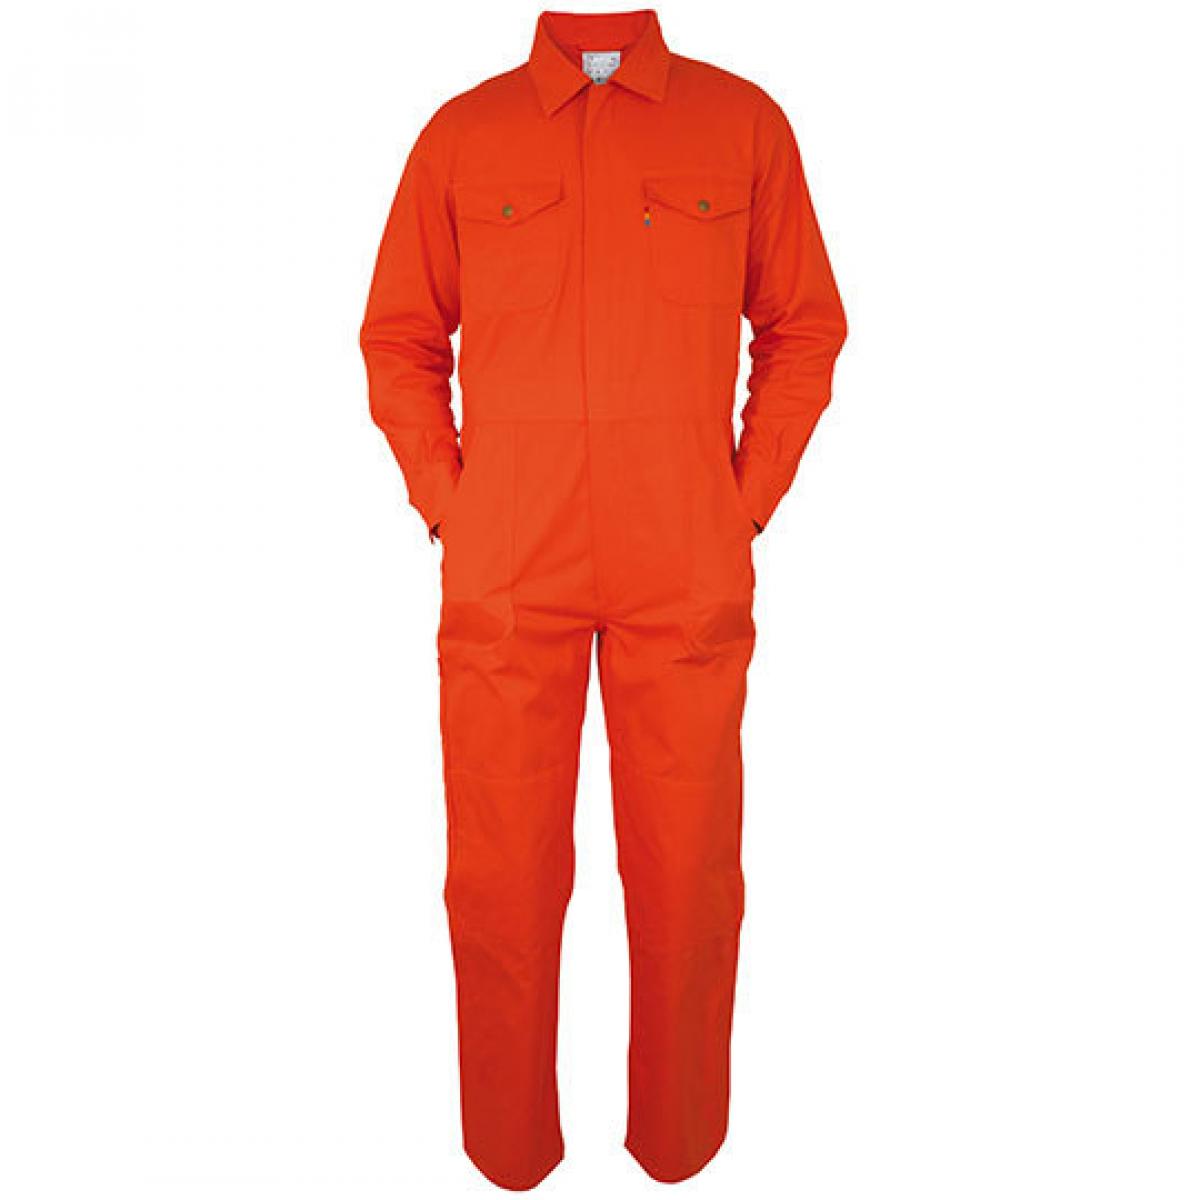 Hersteller: Carson Classic Workwear Herstellernummer: KTH735 Artikelbezeichnung: Herren Classic Overall / Öko-Tex® Standard 100 zertifiziert Farbe: Orange